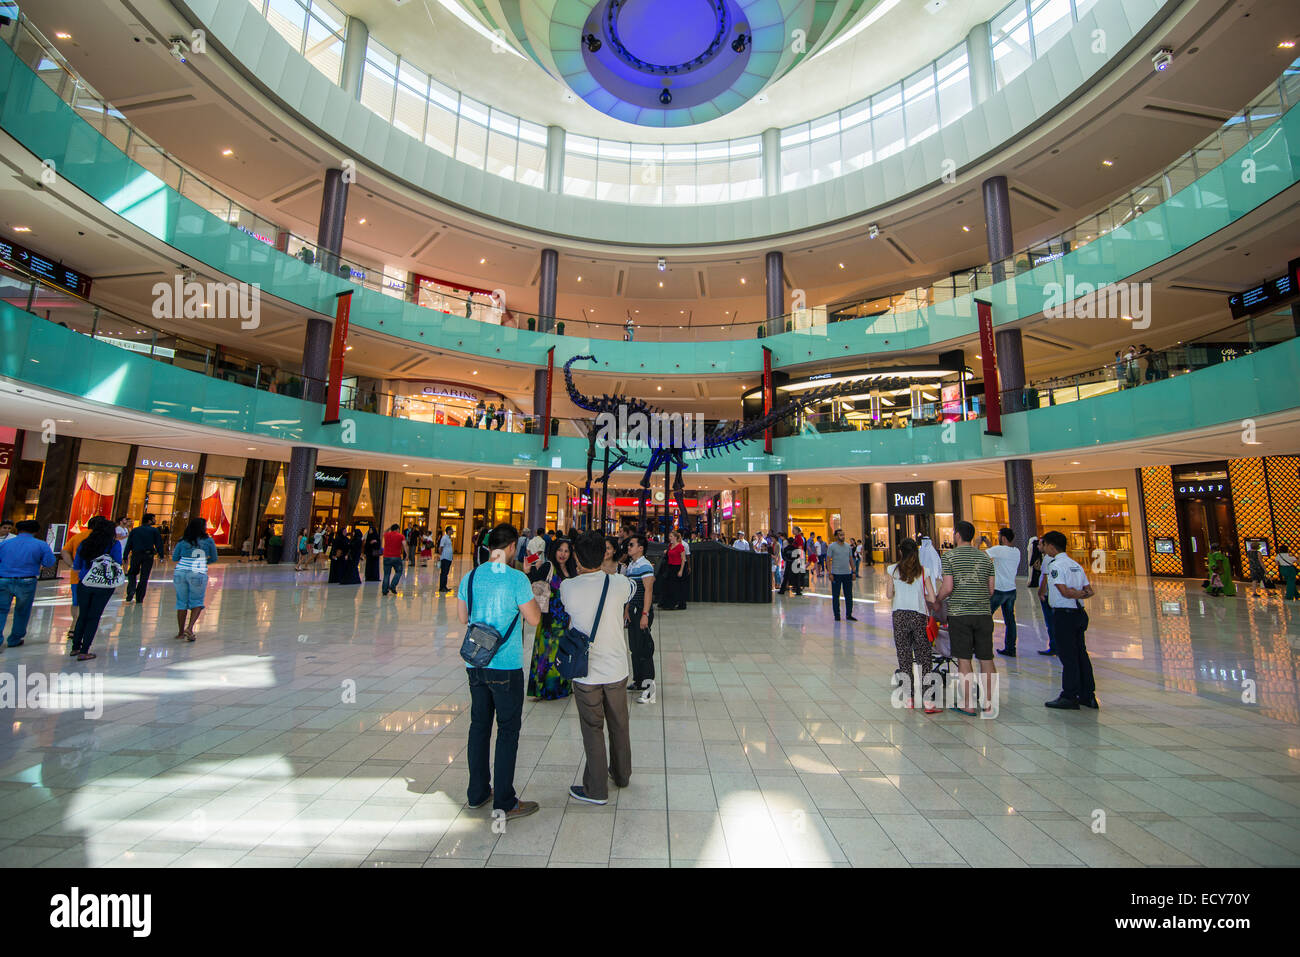 Dubai Mall, Dubai, United Arab Emirates Stock Photo